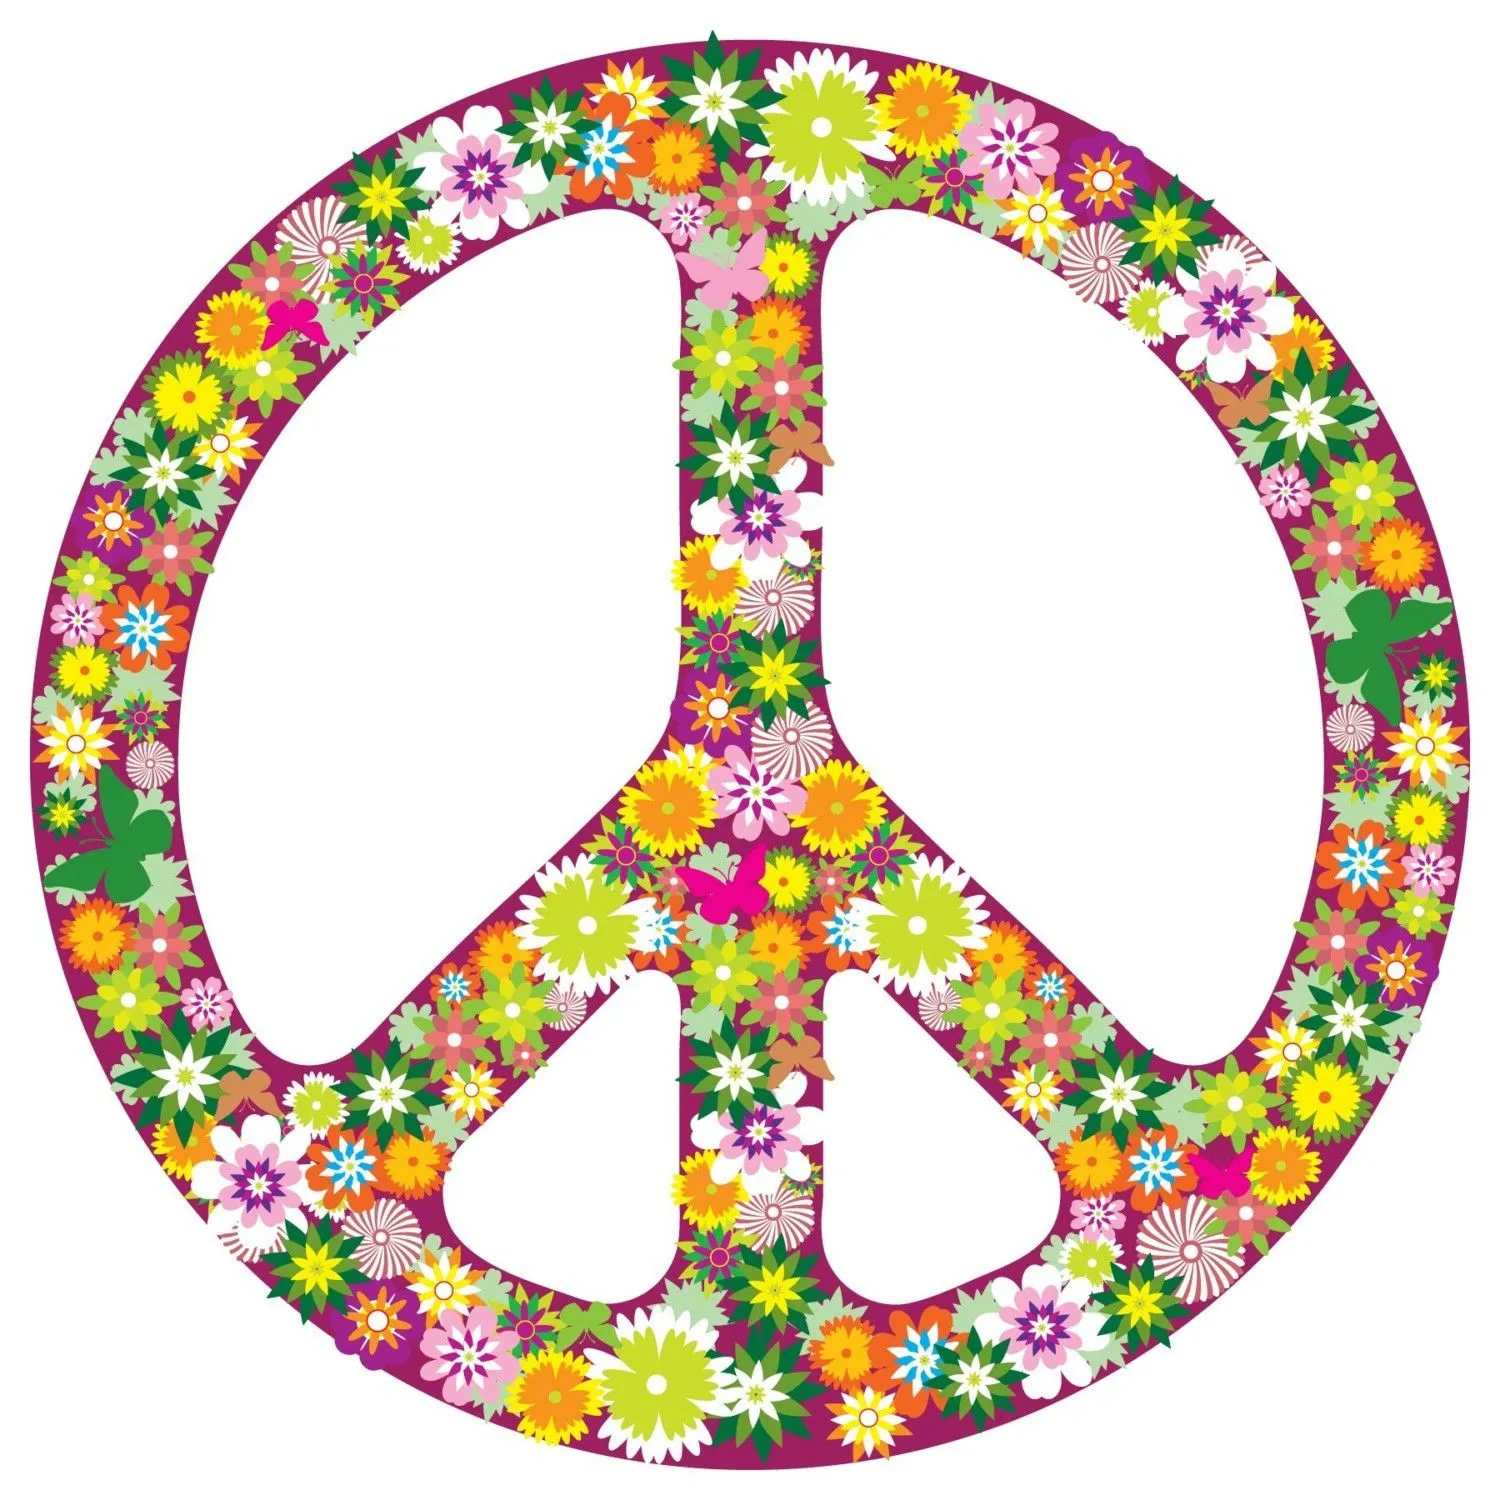 Imagenes y fotos: Simbolos de la Paz, parte 1